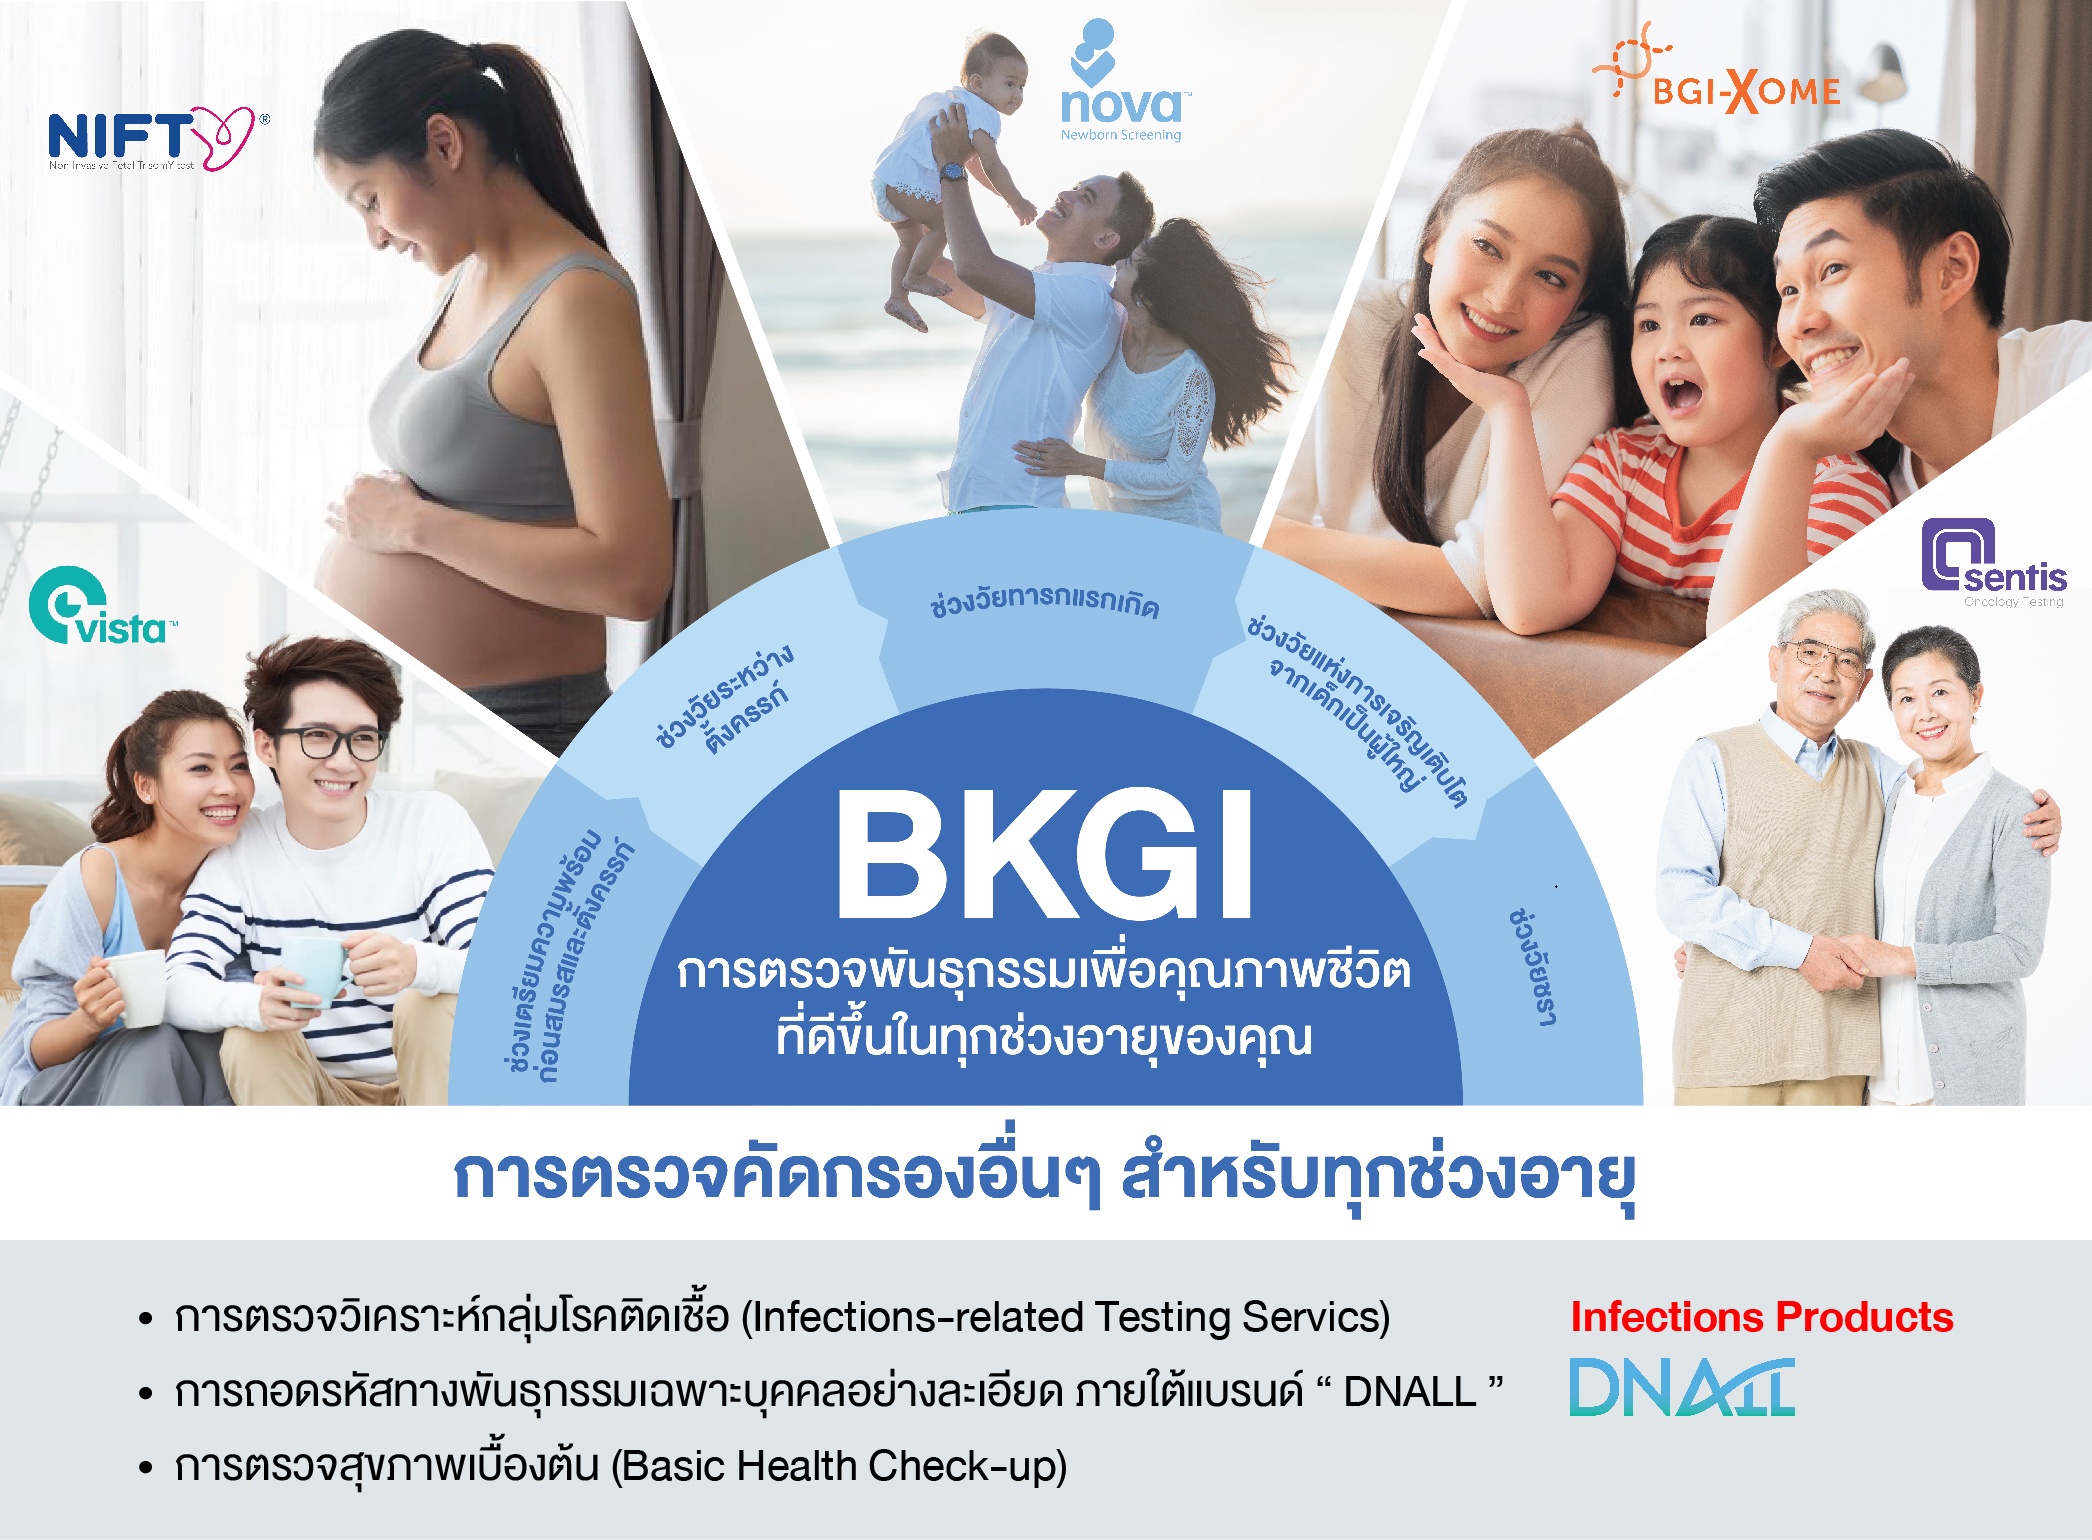 BKGI ผู้นำเทคโนโลยีไบโอเทครายแรกของไทย ที่กำลังจะเข้าจดทะเบียนในตลาดหลักทรัพย์ฯ SET โดยให้บริการถอดรหัสพันธุกรรมครอบคลุมทุกช่วงอายุ ในราคาที่เข้าถึงได้ เพื่อคุณภาพชีวิตที่ดีขึ้น